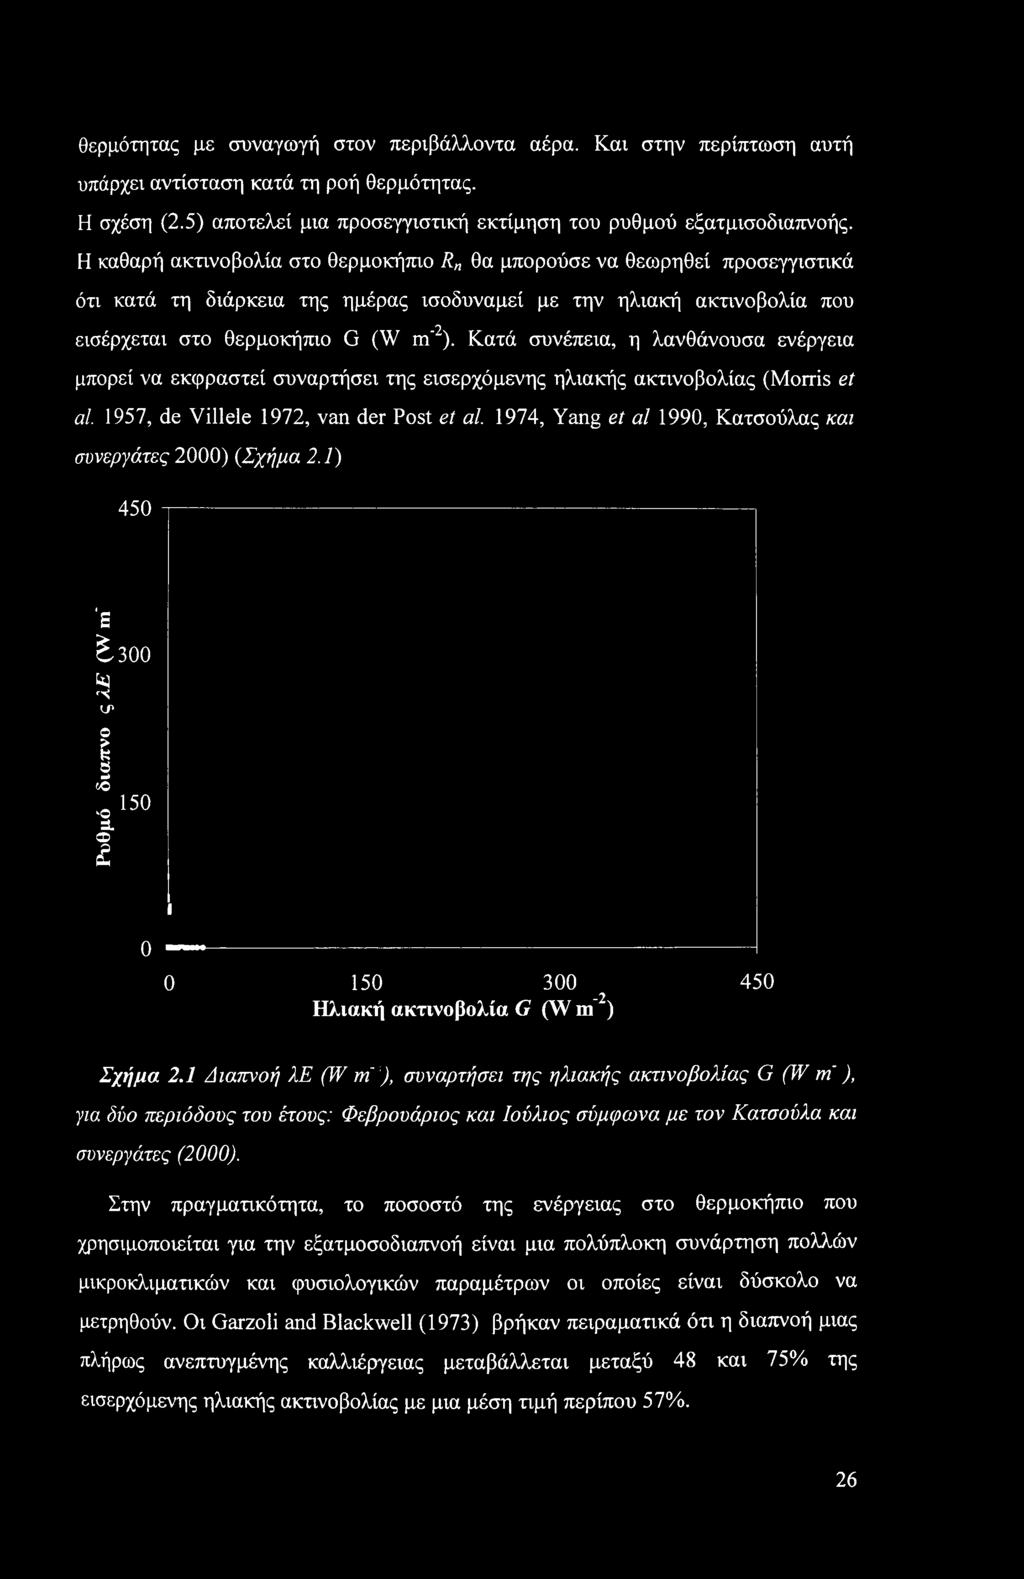 Κατά συνέπεια, η λανθάνουσα ενέργεια μπορεί να εκφραστεί συναρτήσει της εισερχόμενης ηλιακής ακτινοβολίας (Morris et al. 1957, de Villele 1972, van der Post et al.